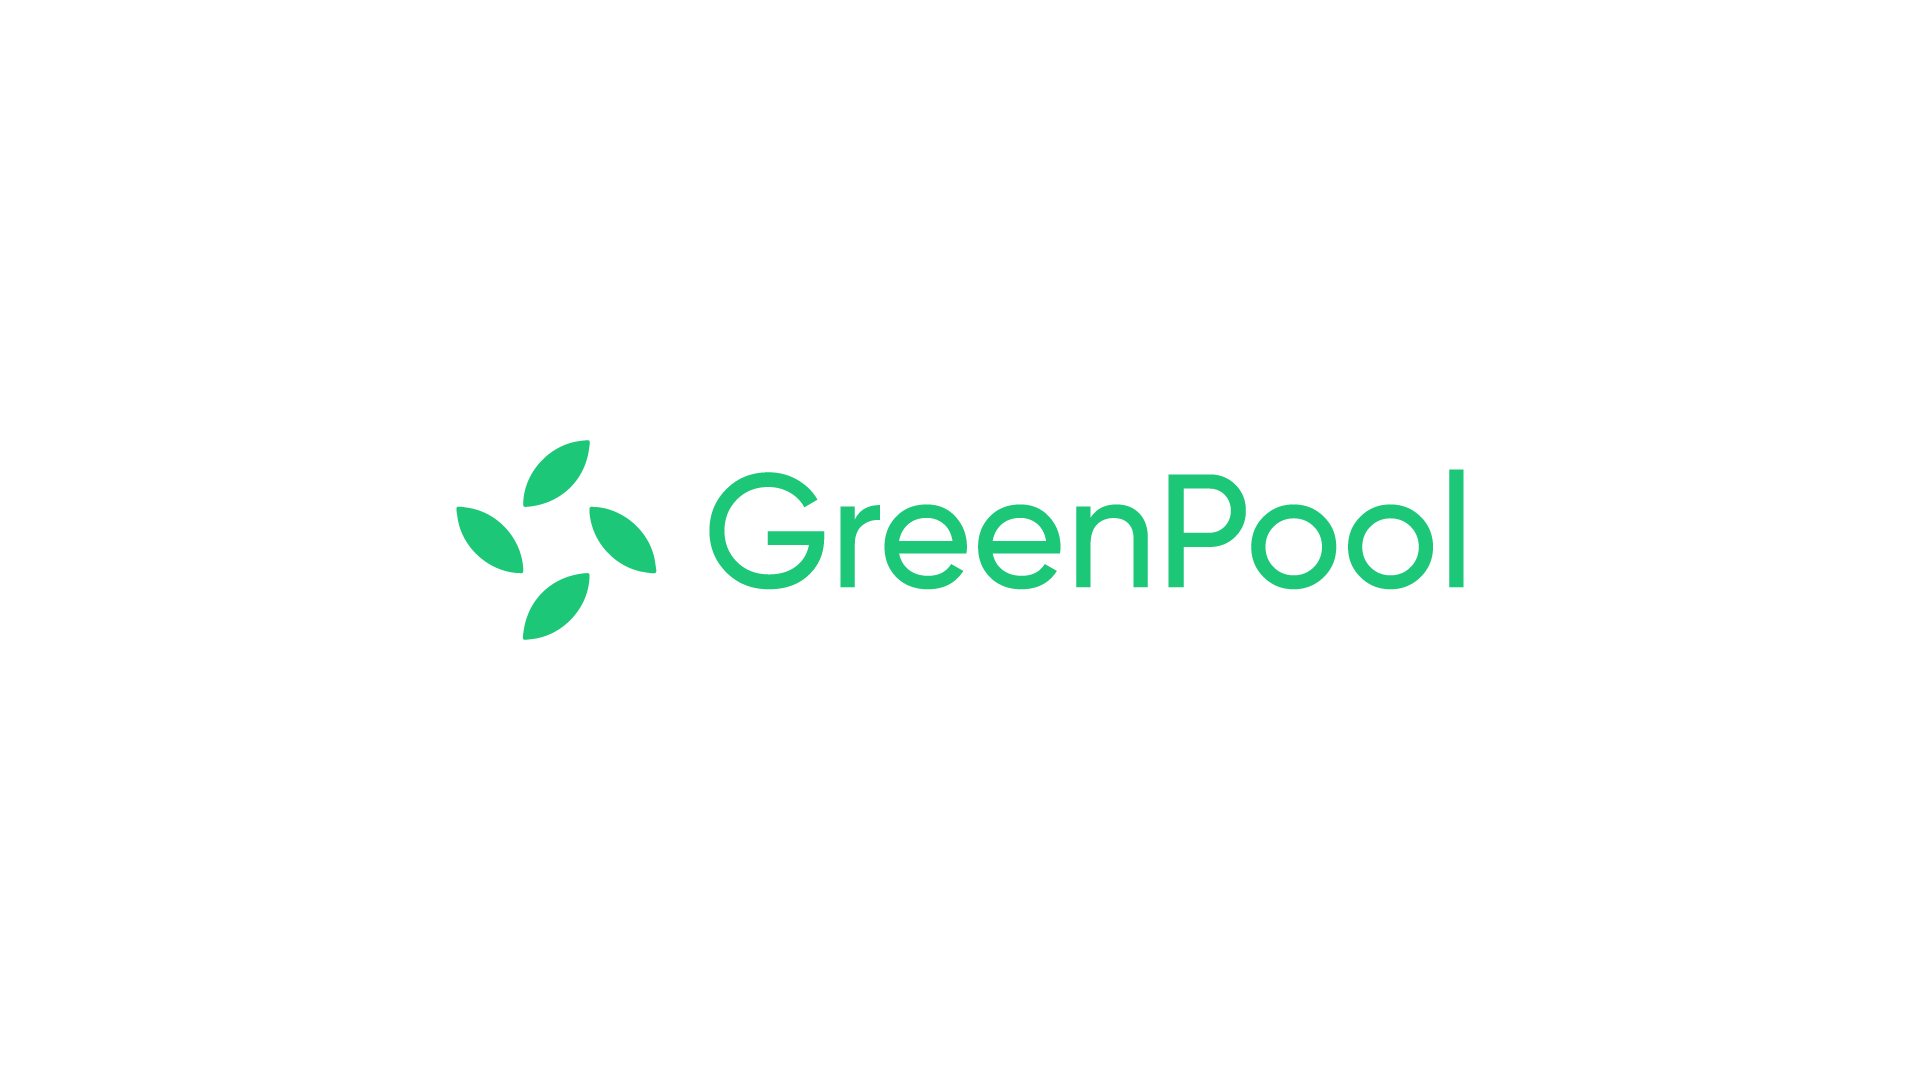 GreenPool: Farm Chia Coins in Pool